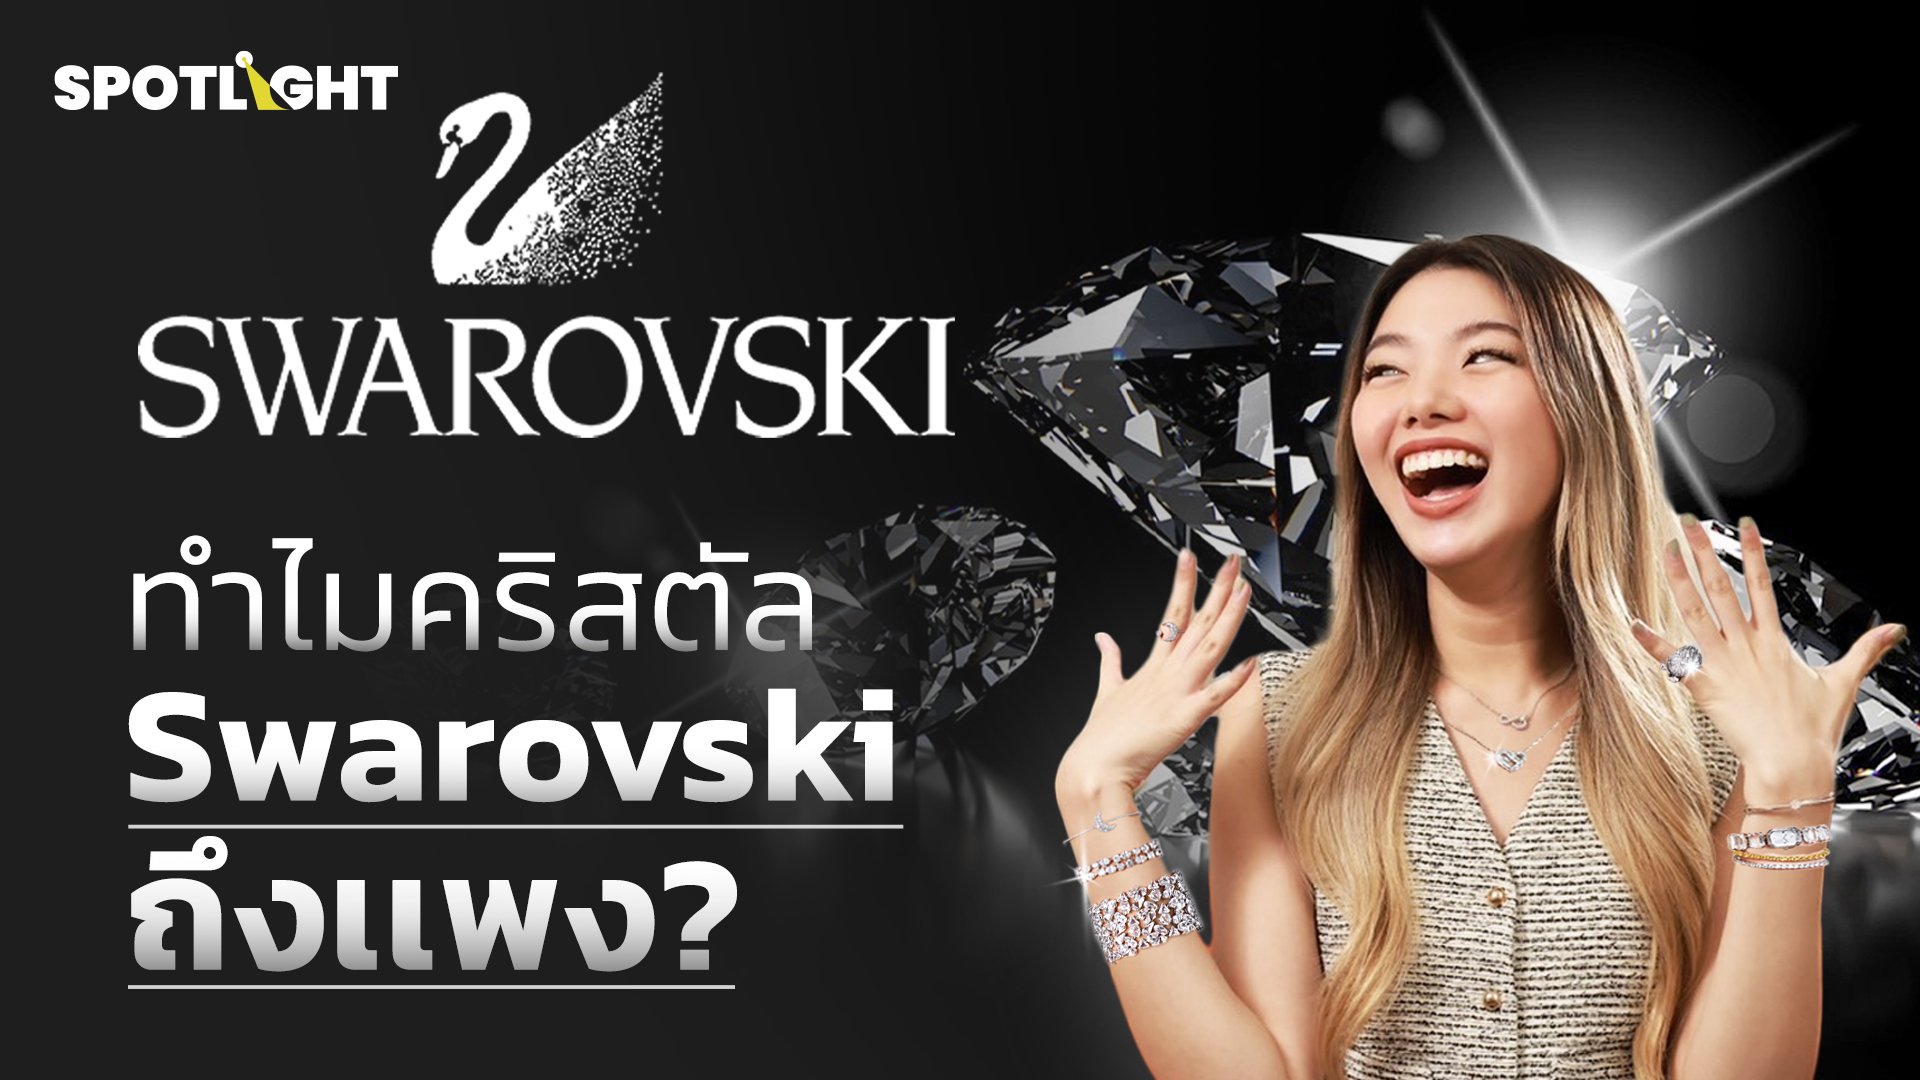 ทําไมคริสตัล Swarovski ถึงเเพง? | Spotlight | 17 พ.ย. 66 | AMARIN TVHD34